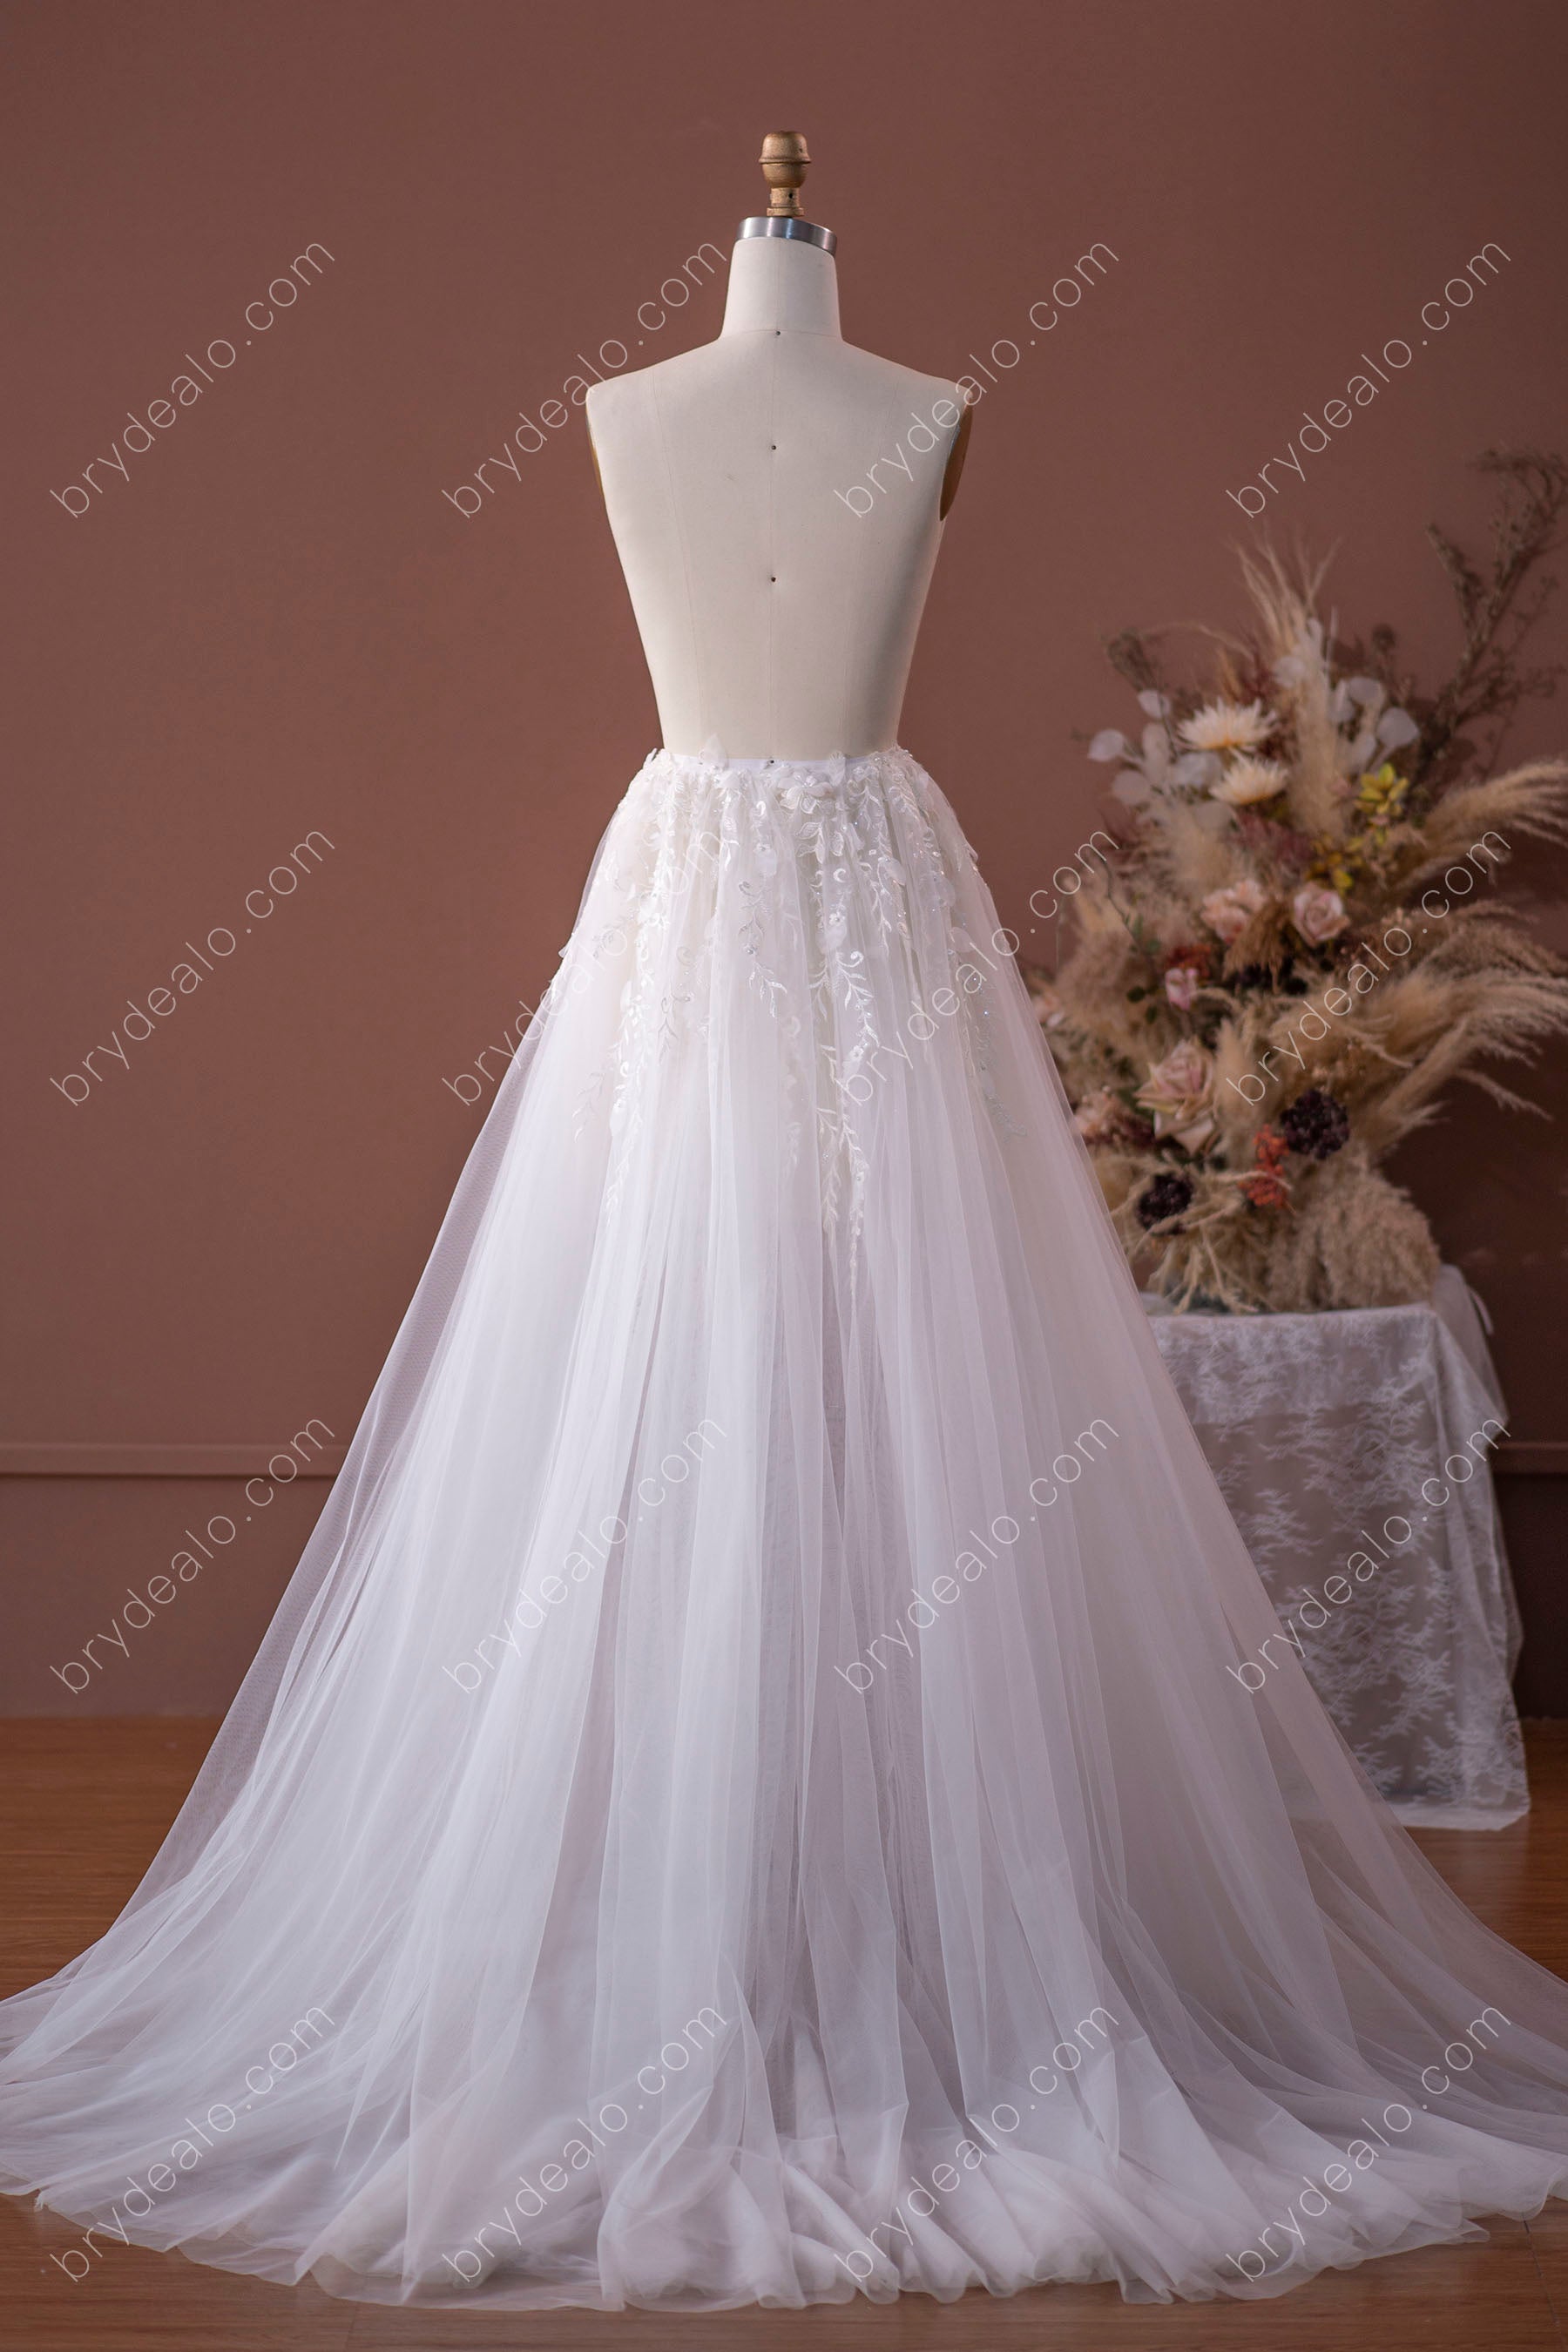 soft tulle wedding dress overskirt